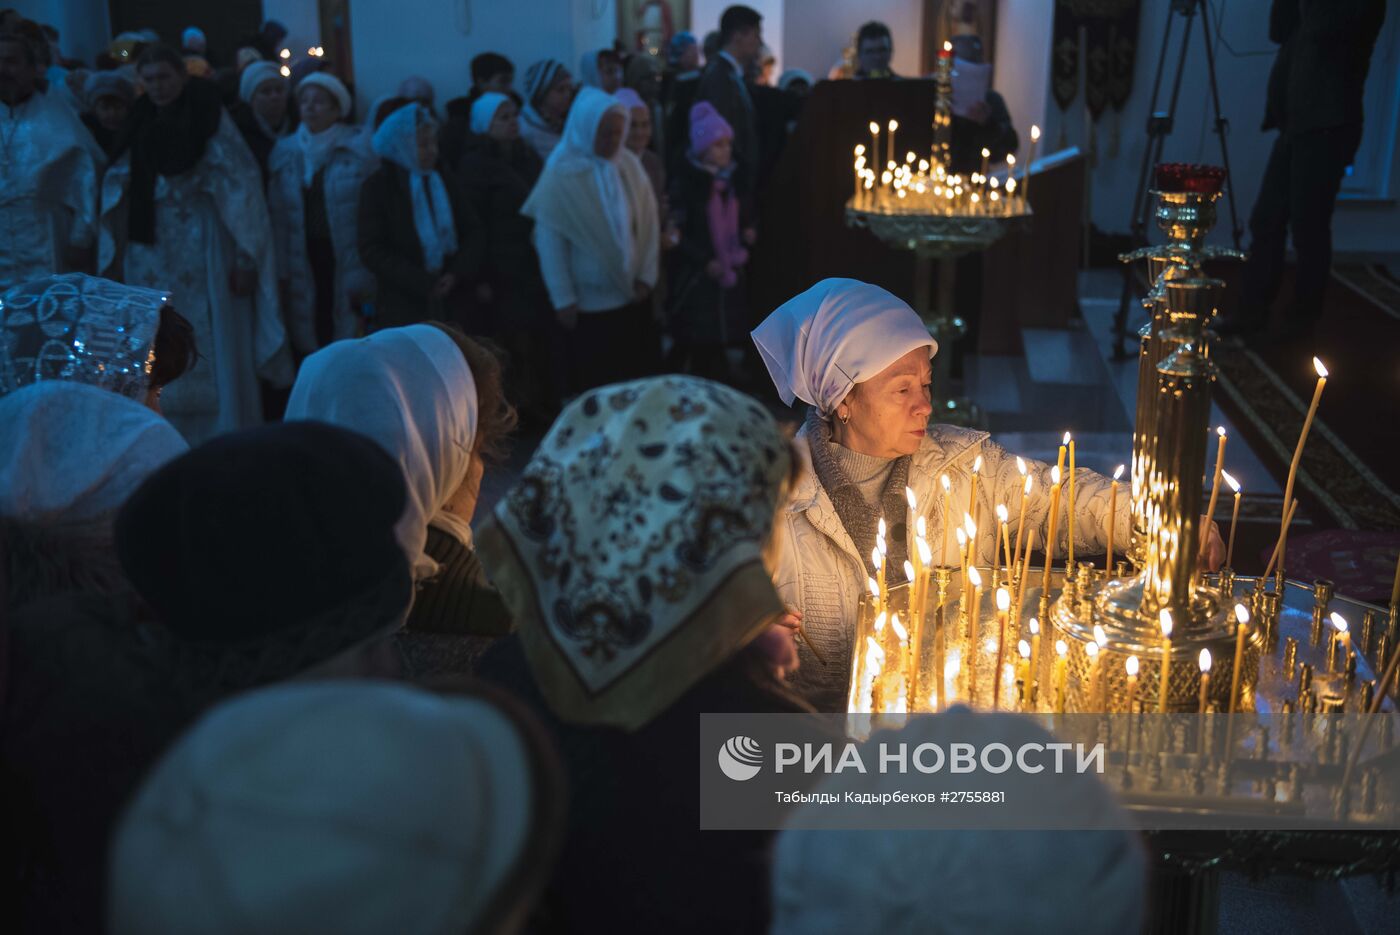 Освящение православного храма в Бишкеке